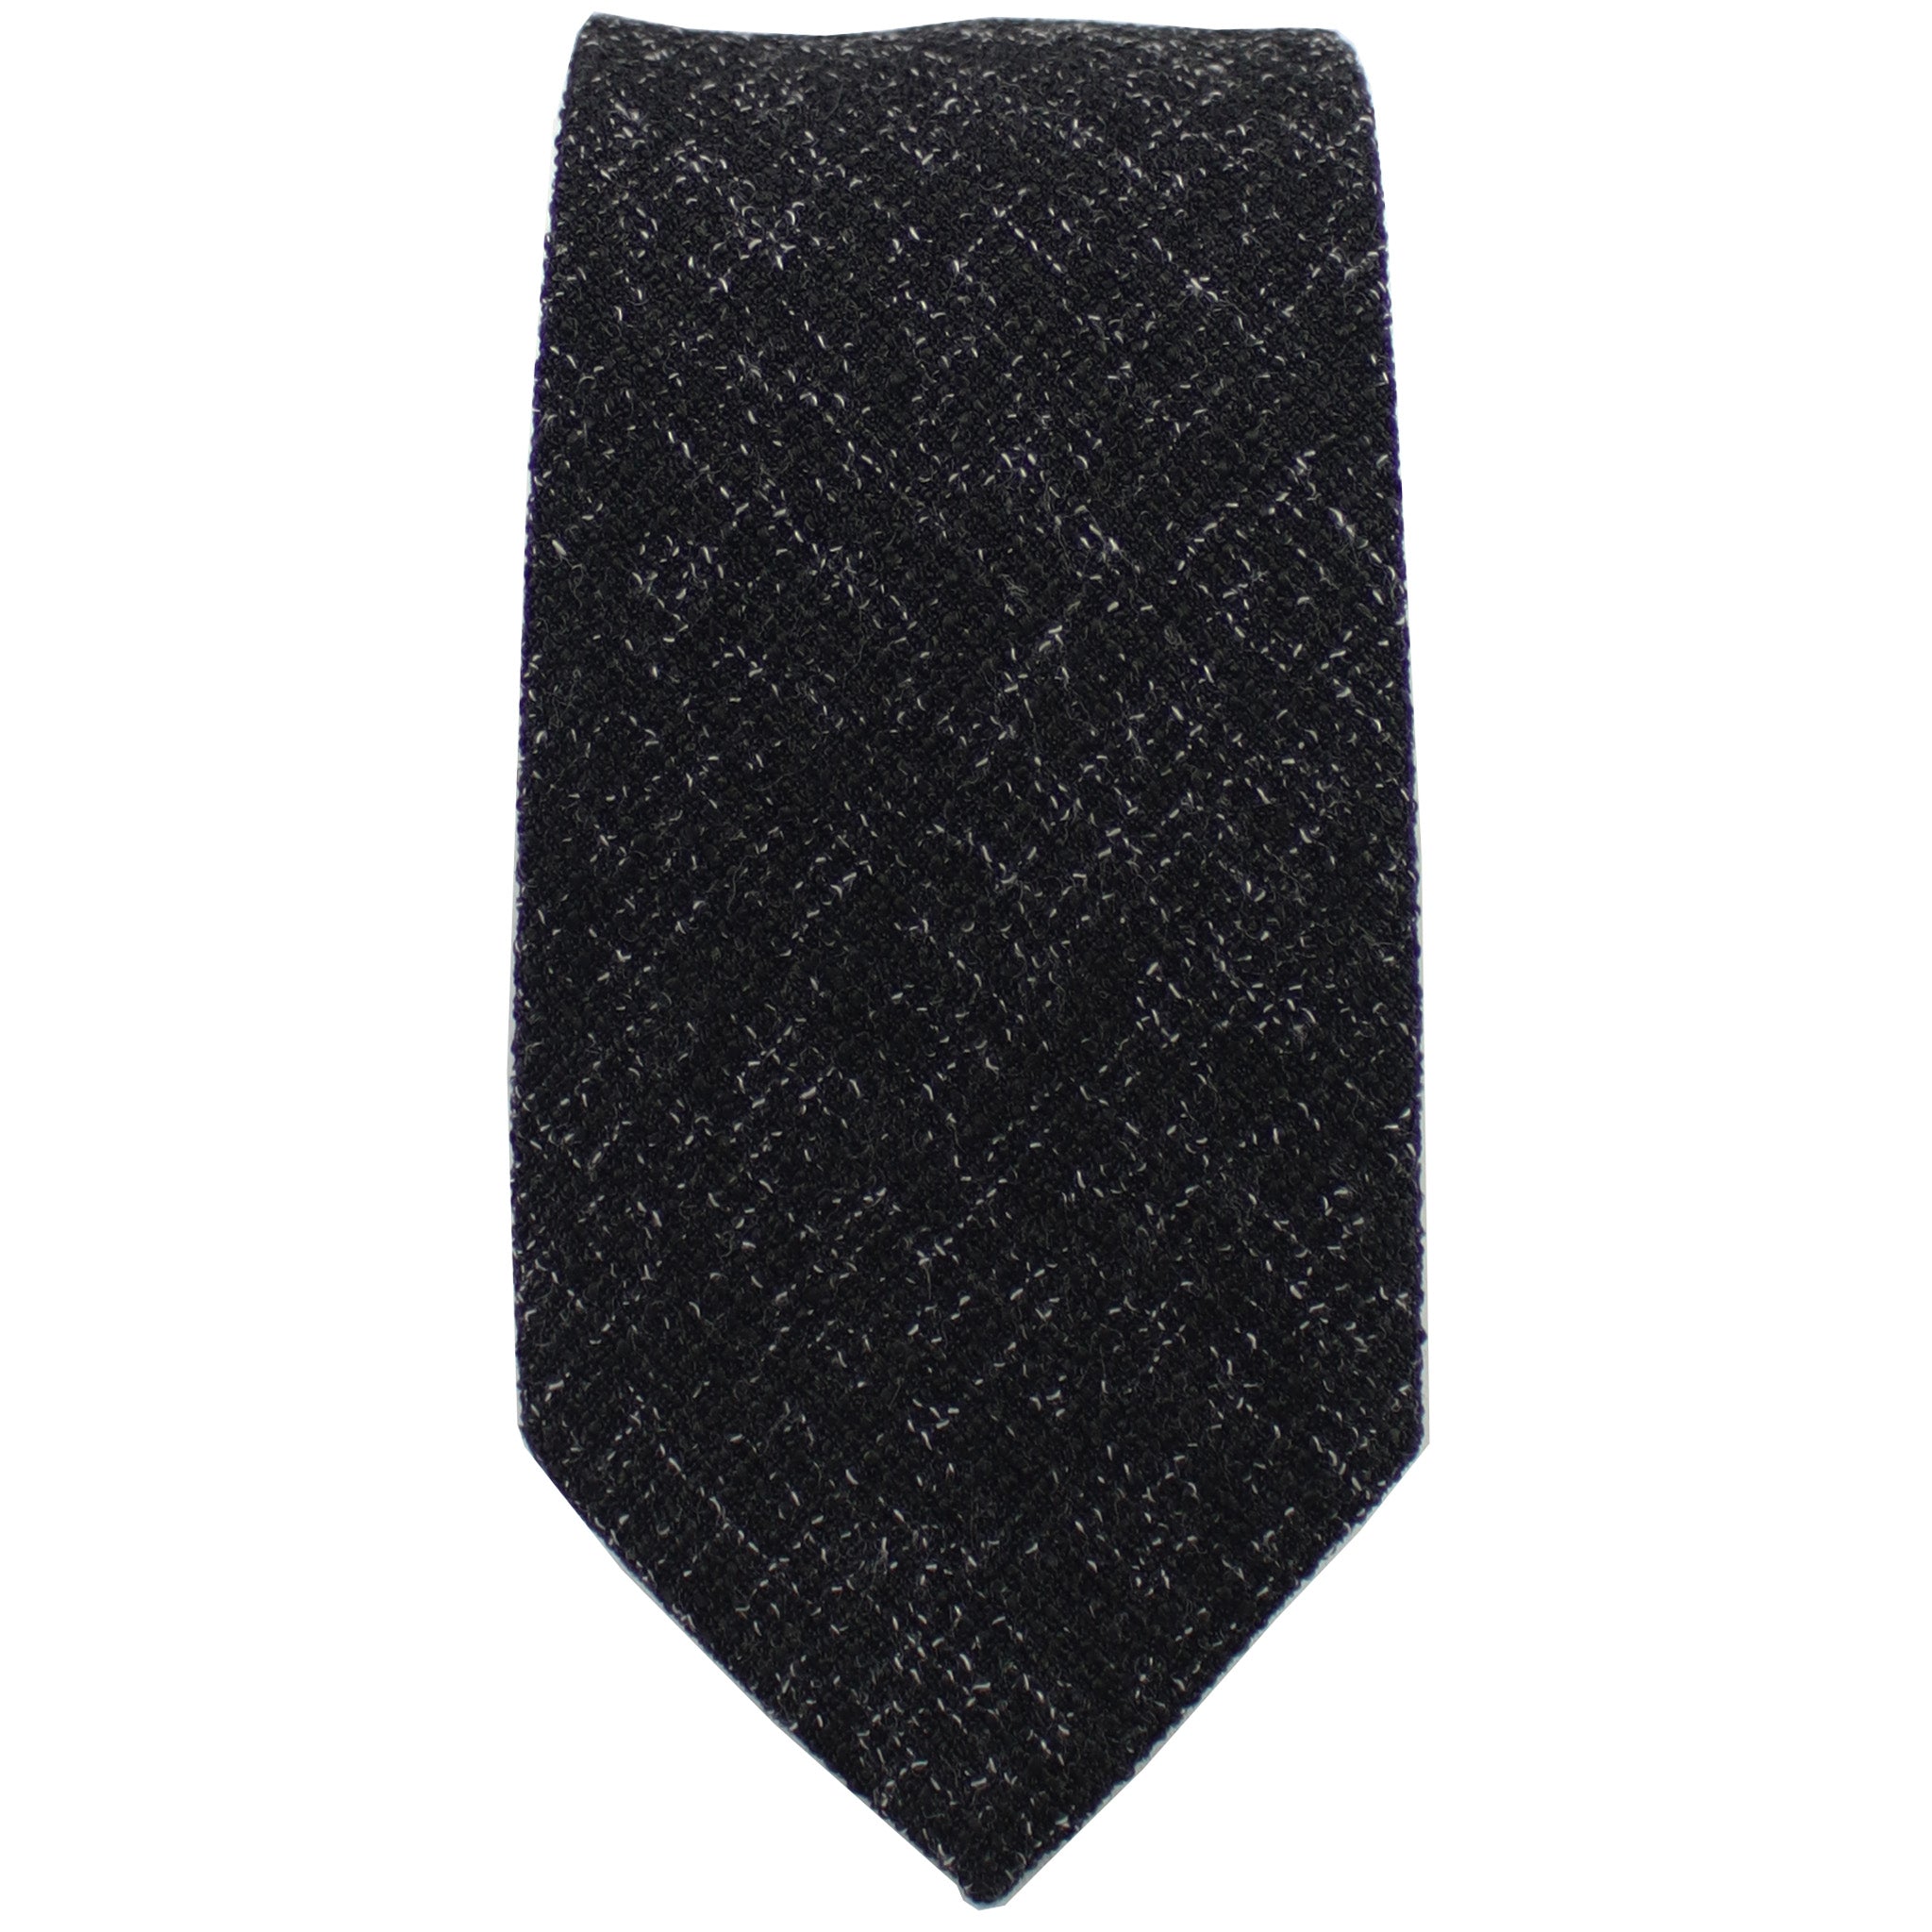 Black Twill Tie from DIBI